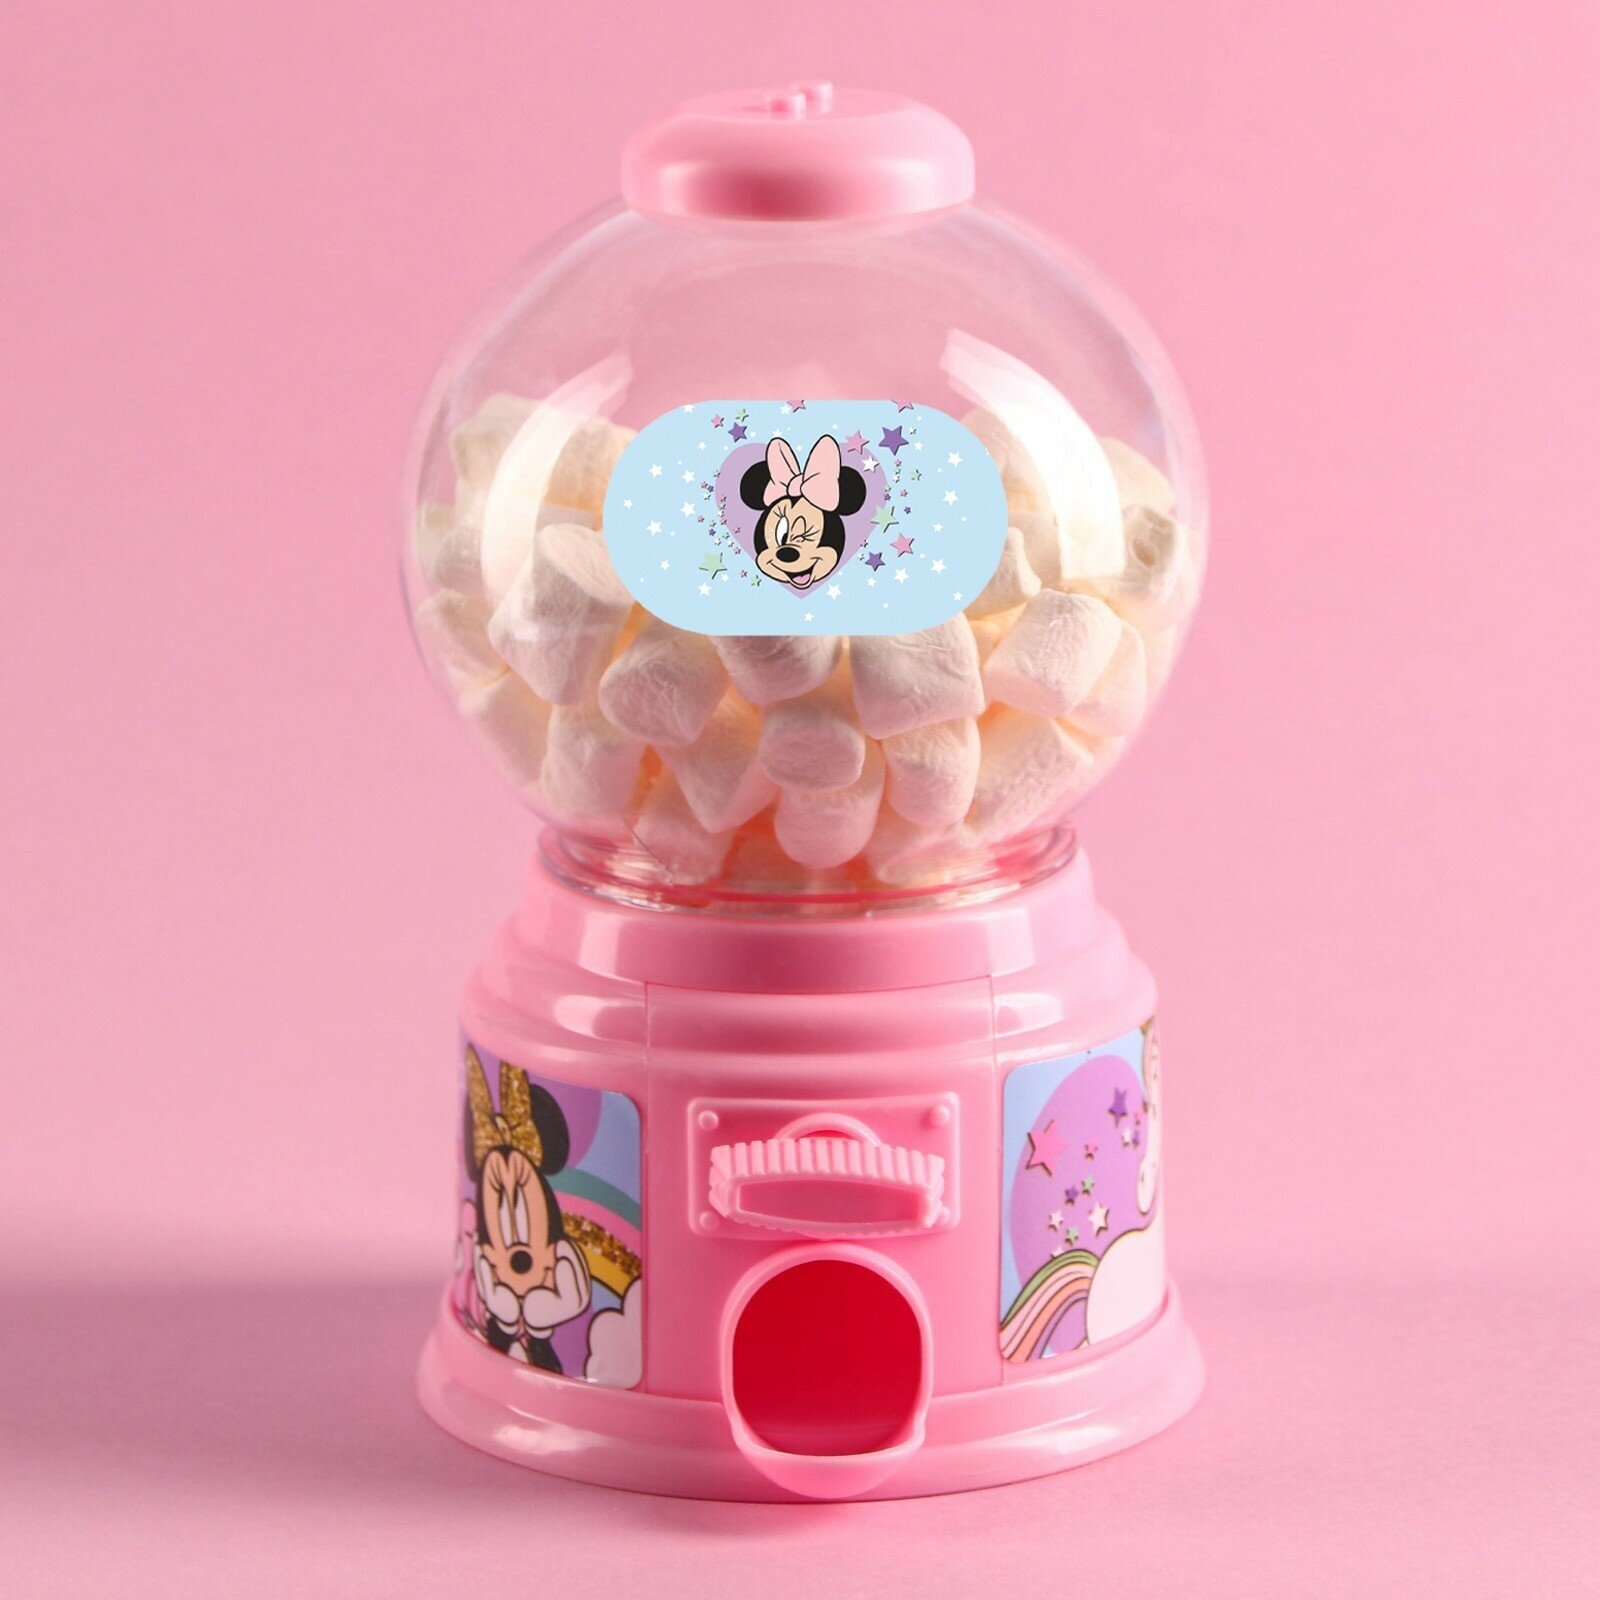 Детский автомат для конфет Disney "Конфетница. Минни Маус", розовый, для девочек